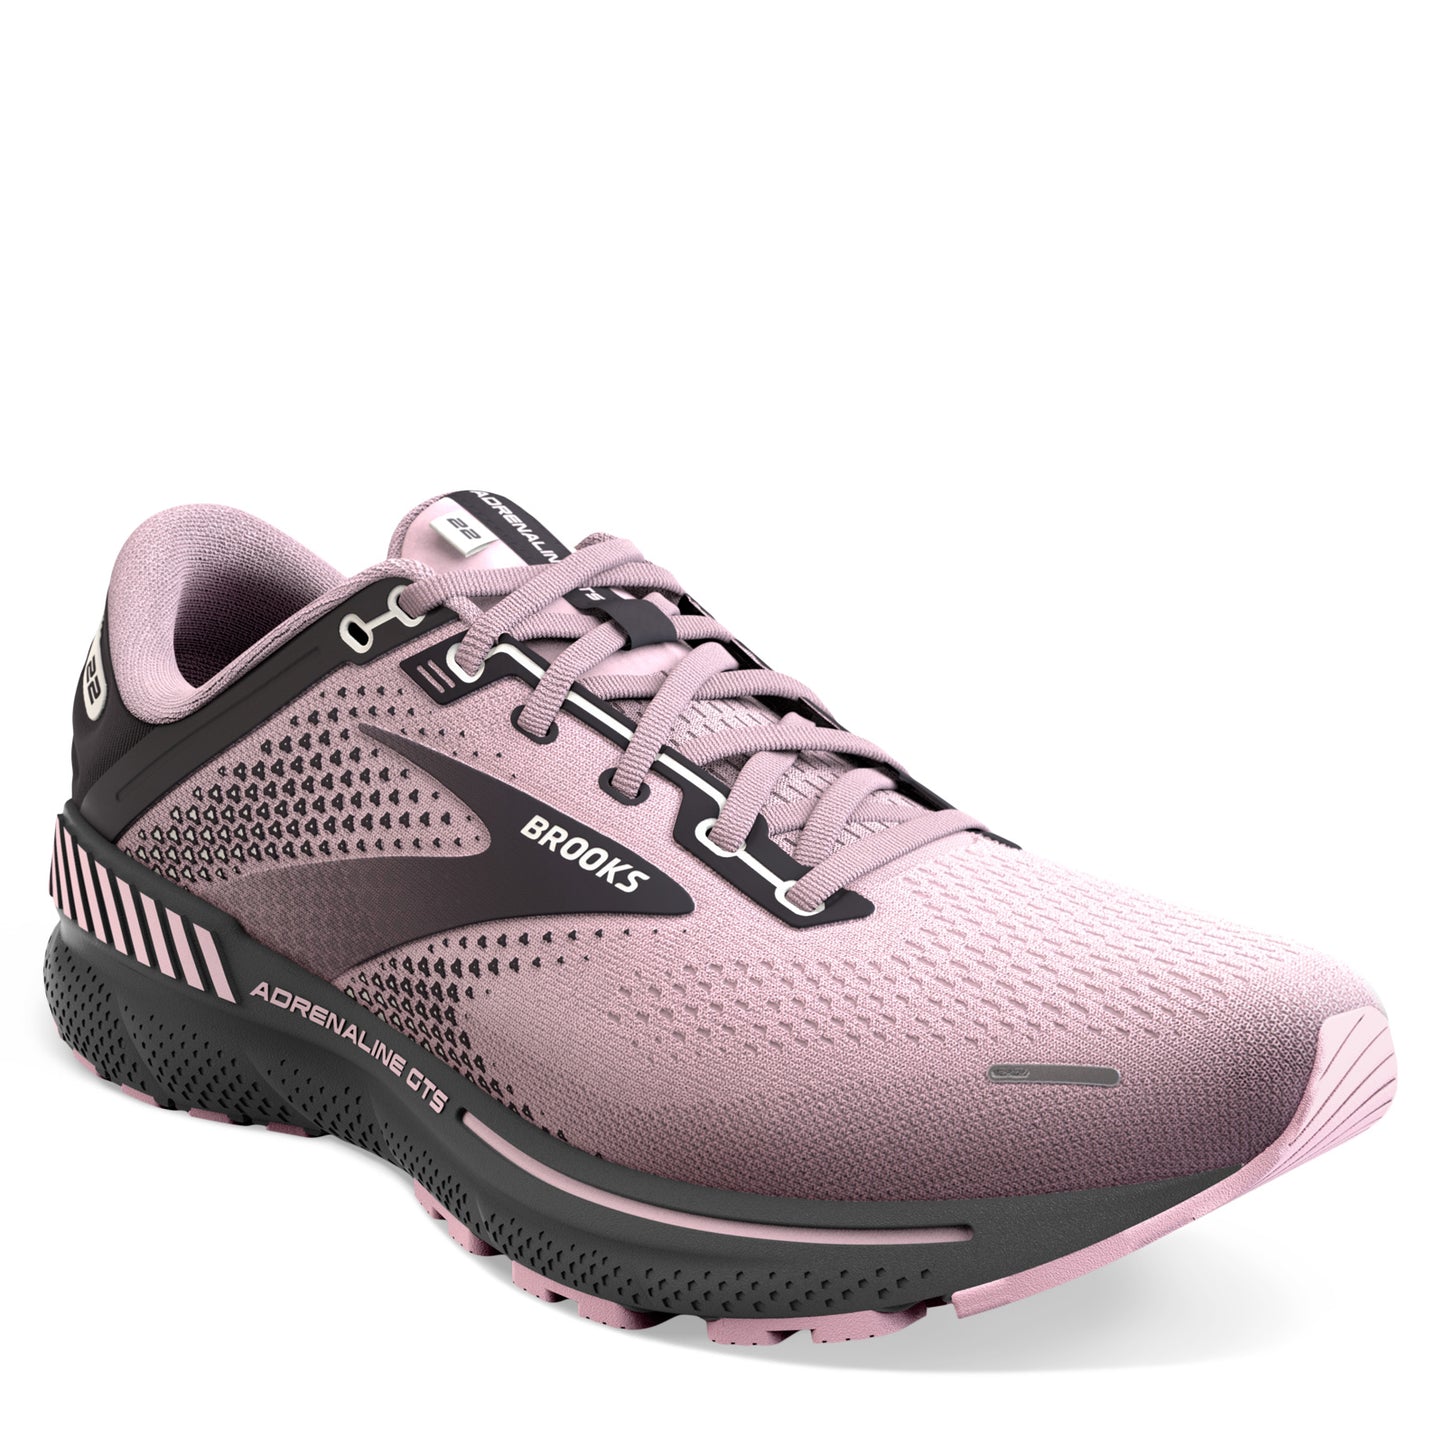 Peltz Shoes  Women's Brooks Adrenaline GTS 22 Running Shoe Pink 120353 1B 678